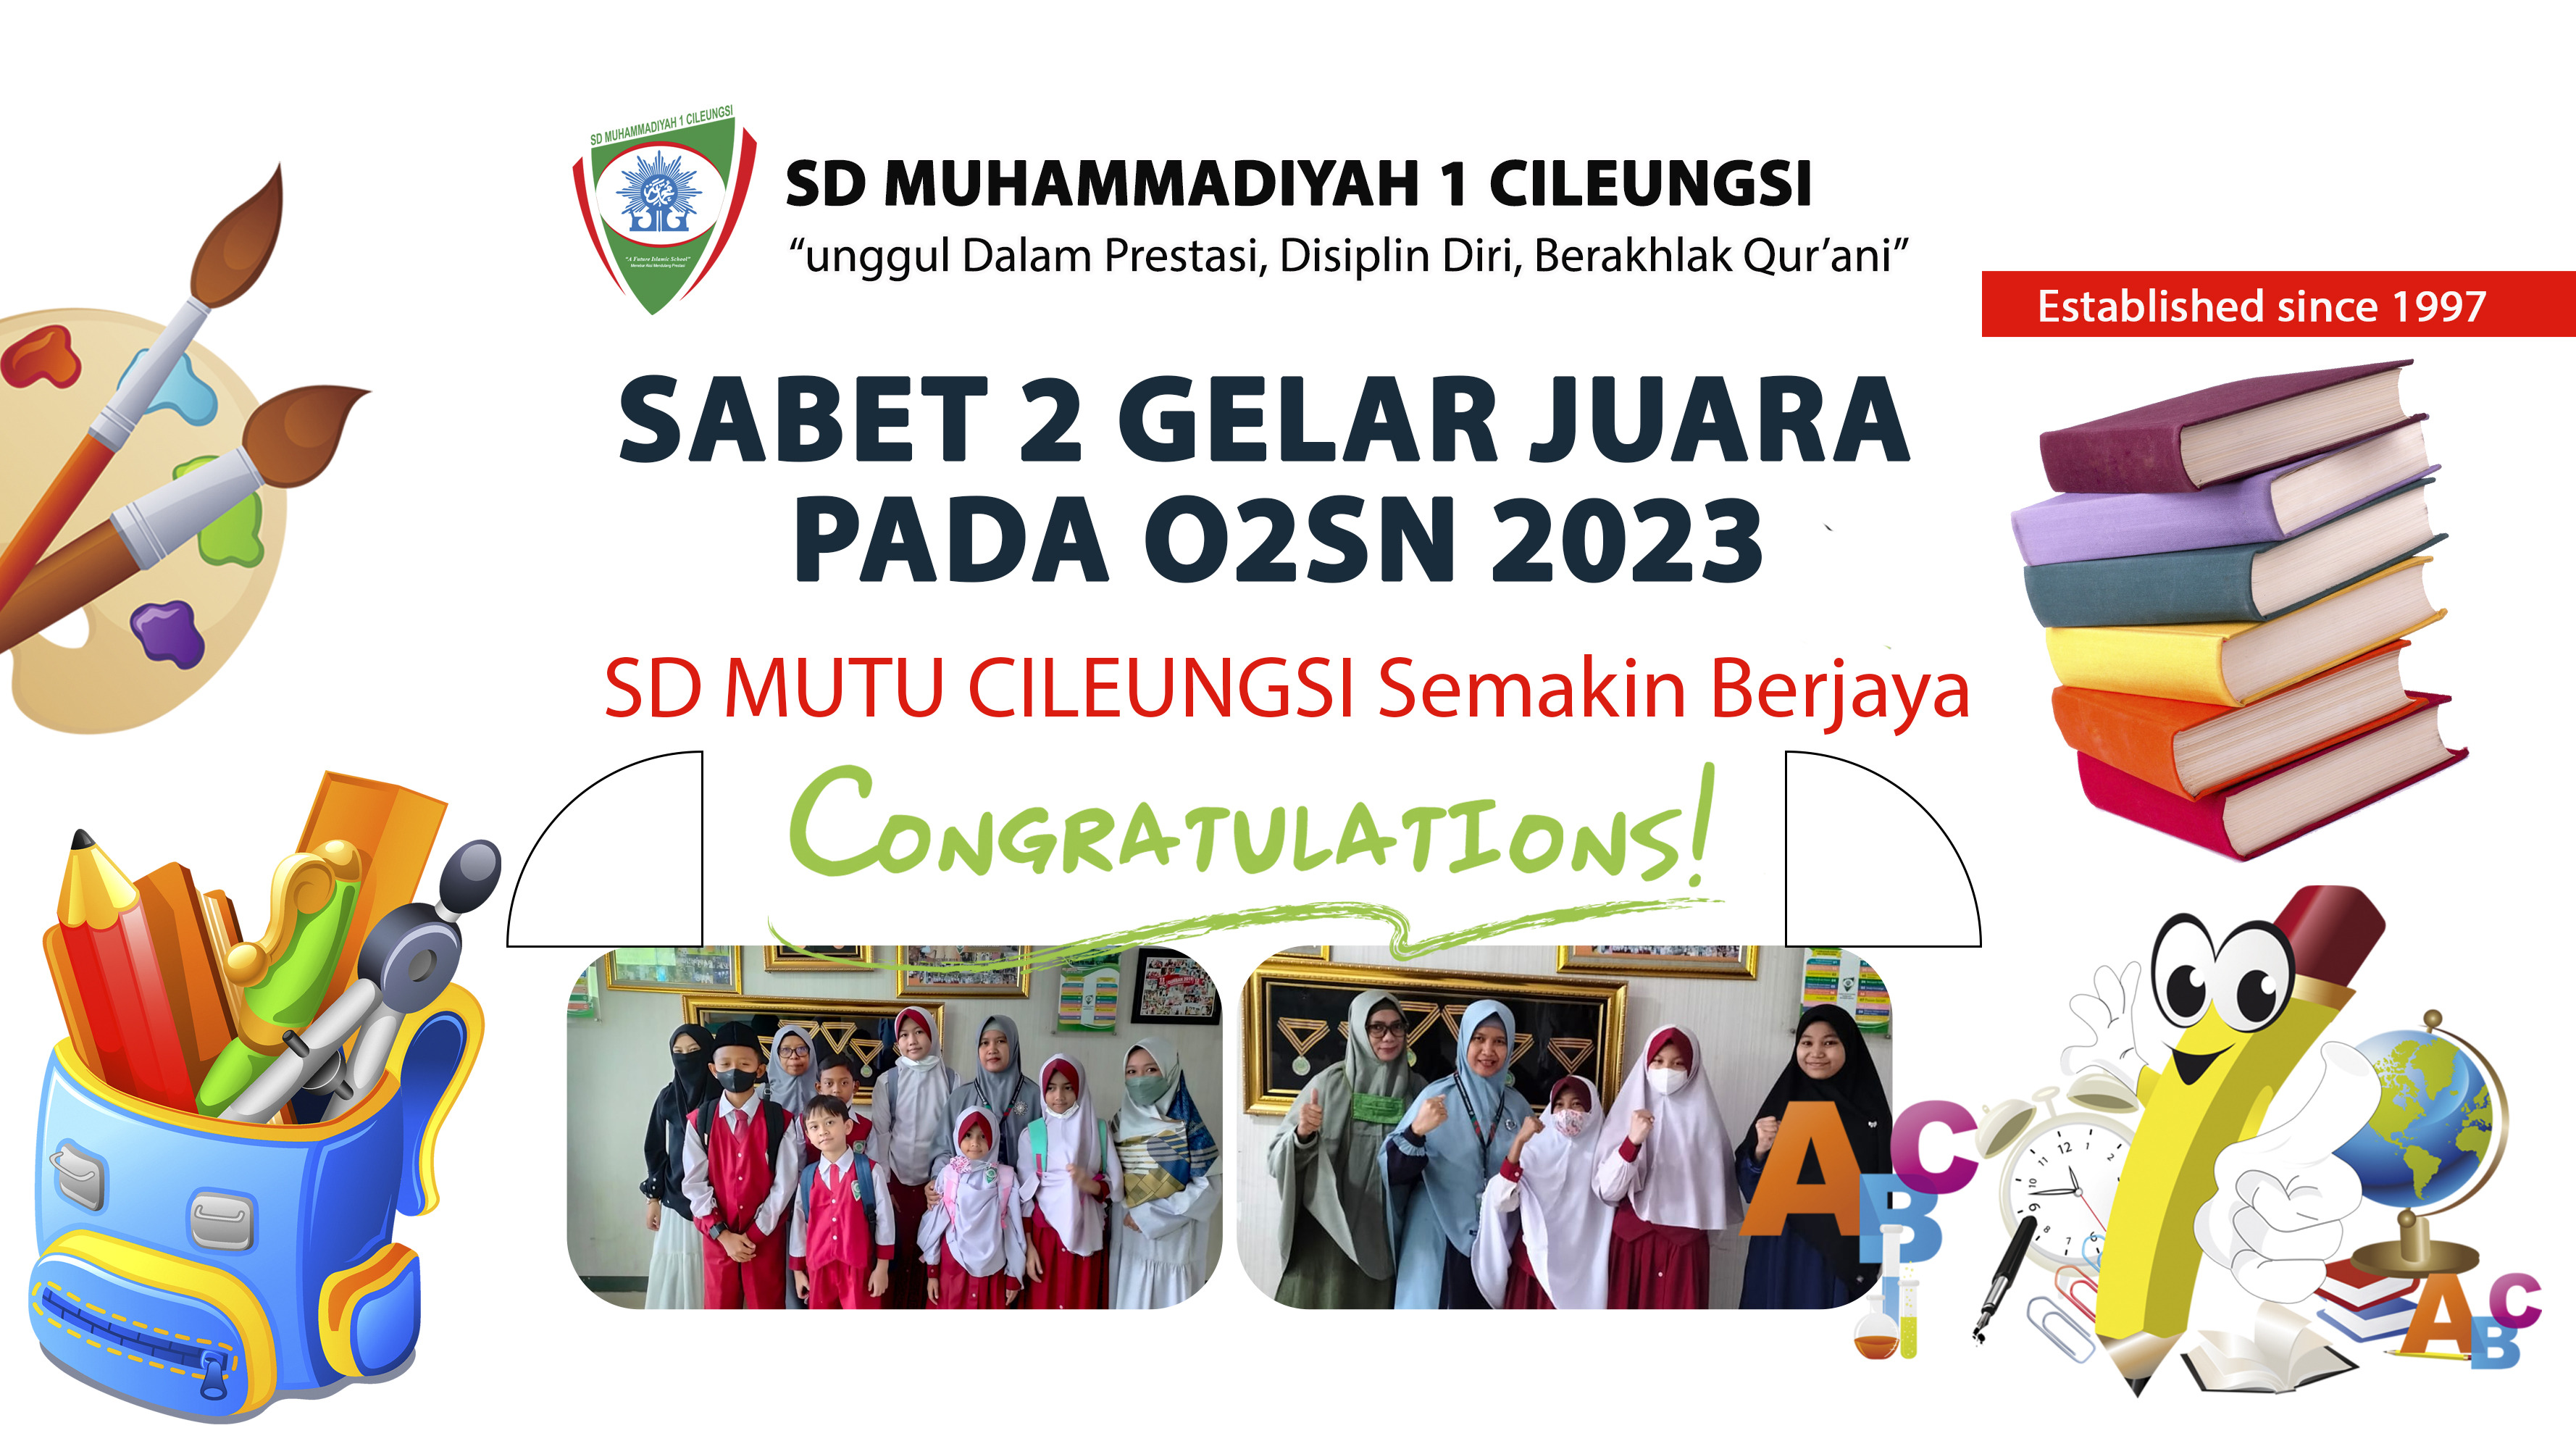 Sabet 2 Gelar Juara pada OSN dan FLSN 2023, SD MUTU Semakin Berjaya.